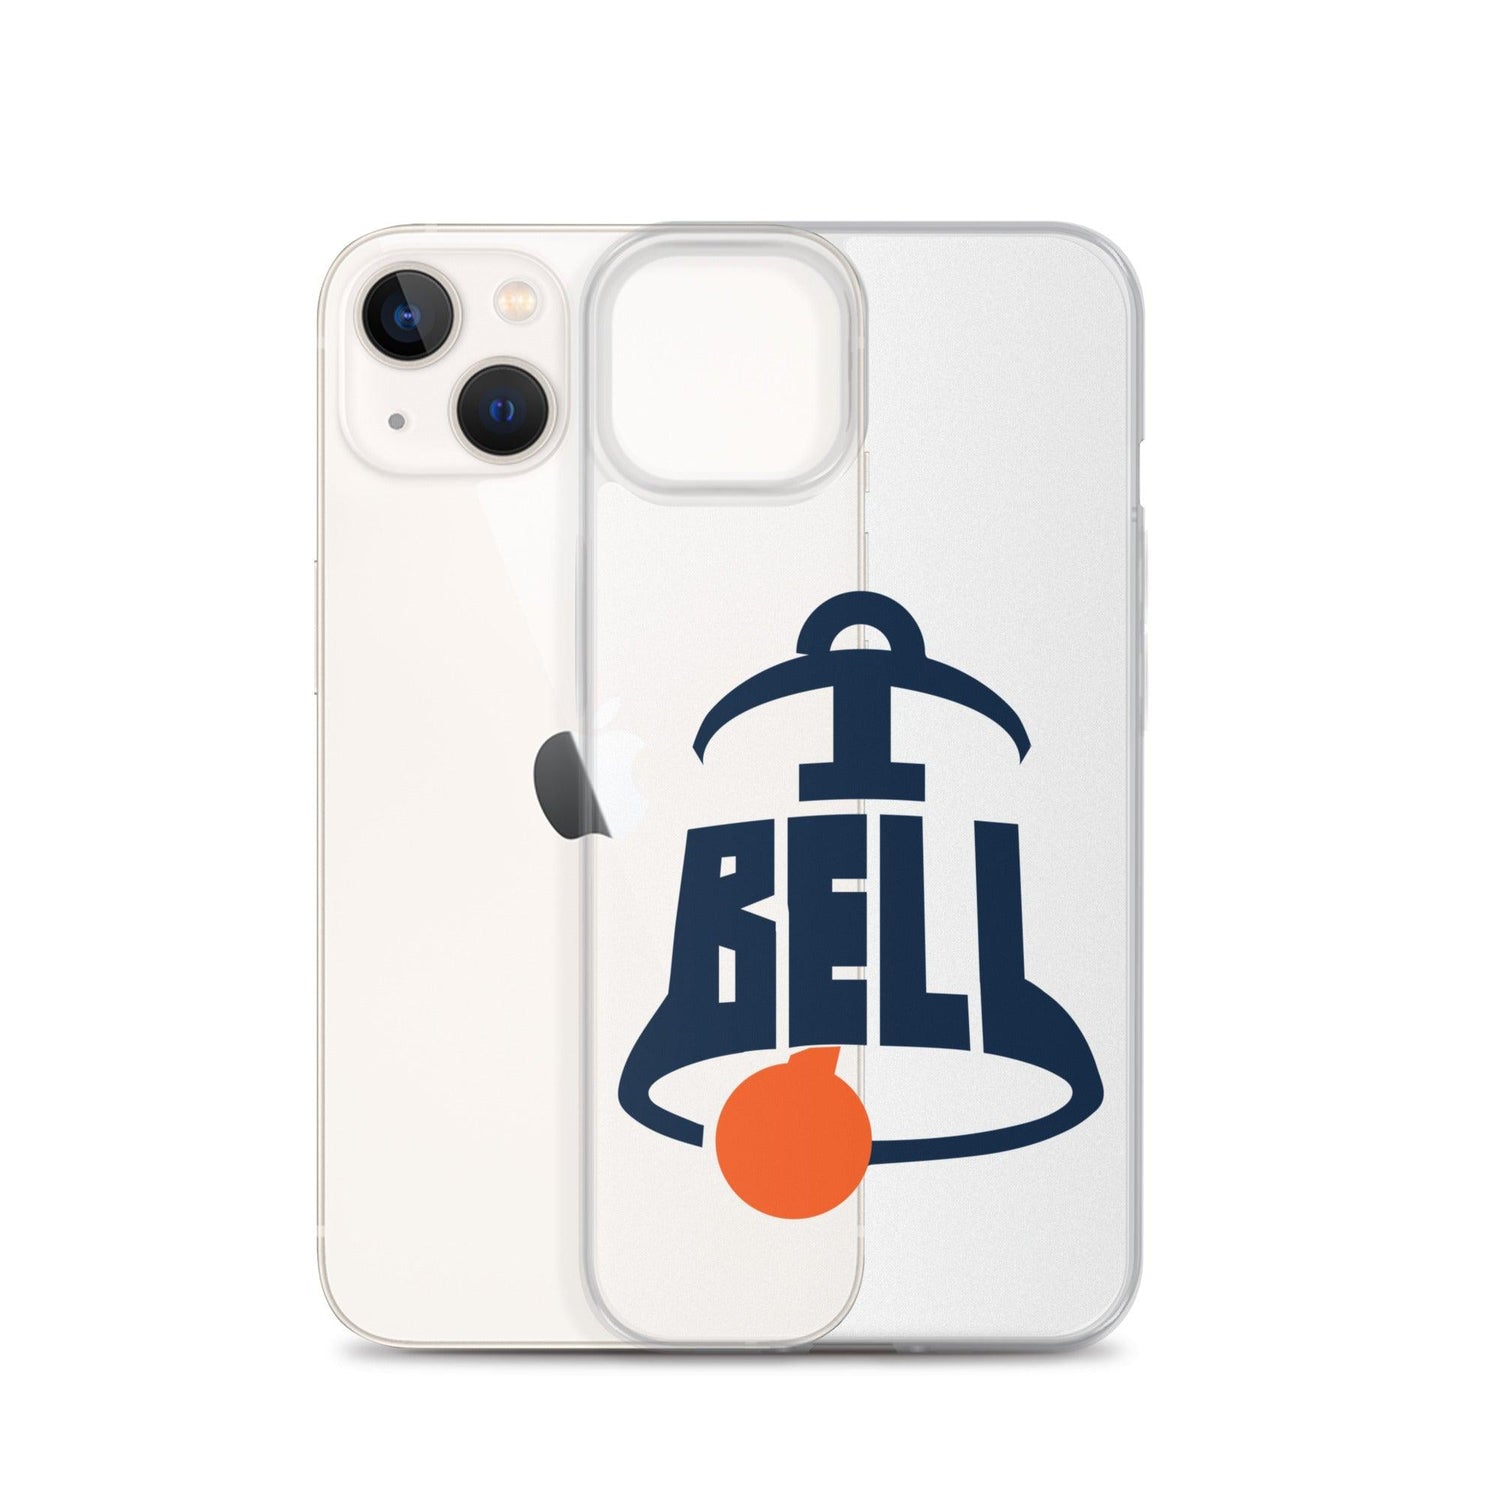 Trumane Bell II "Gametime" iPhone Case - Fan Arch